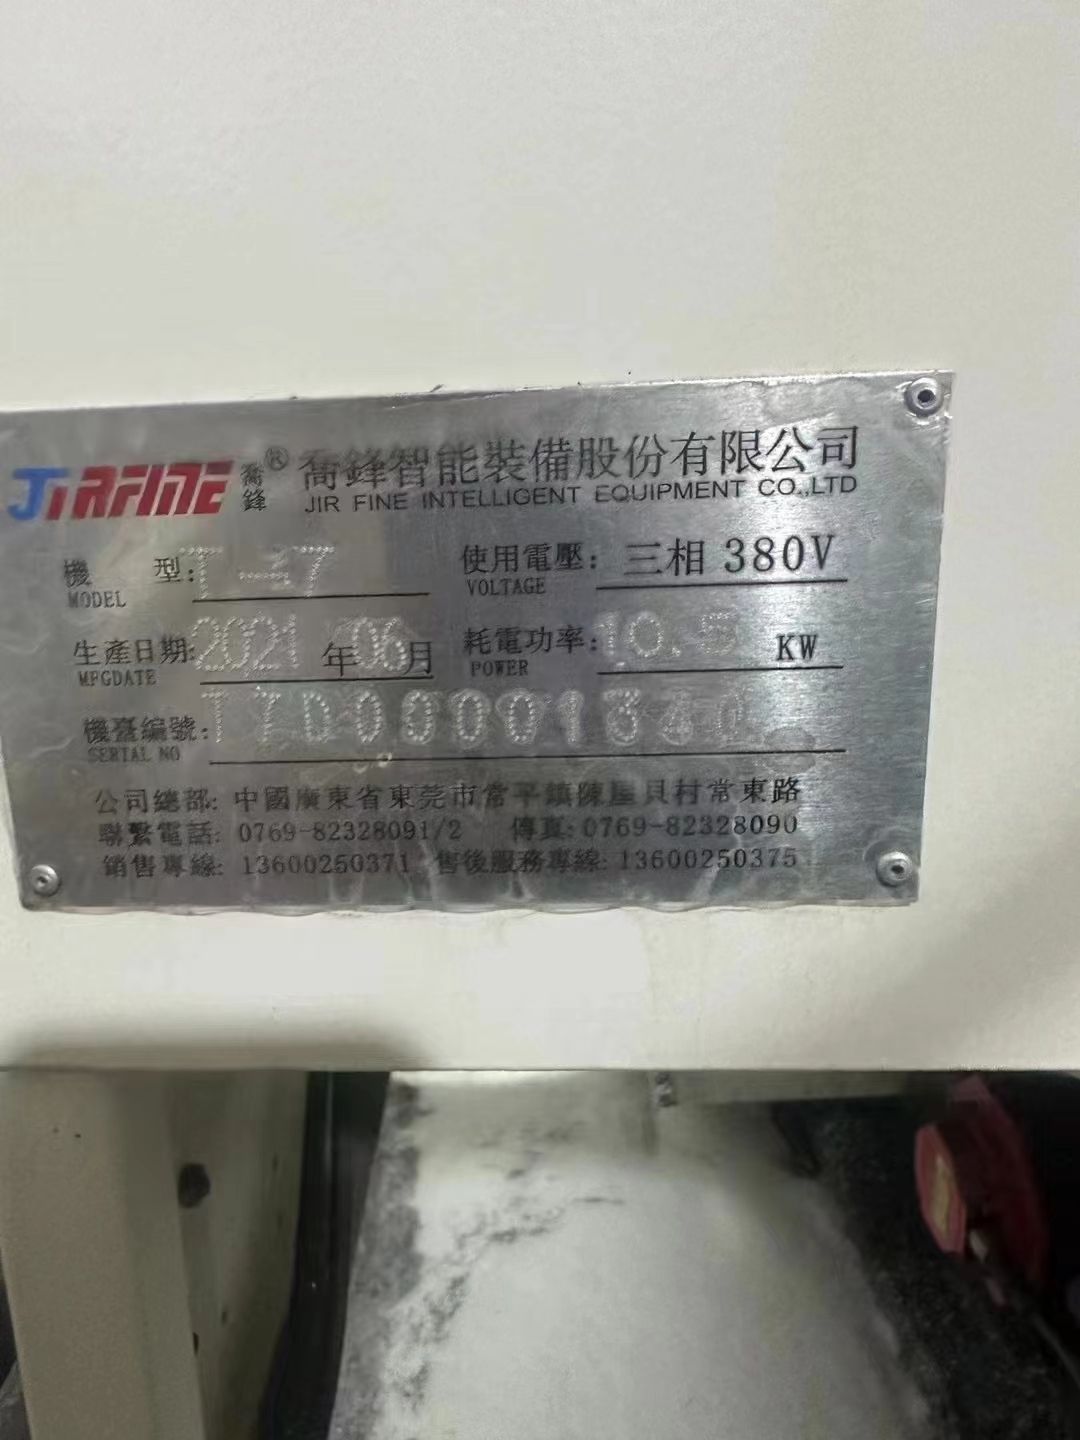 刚刚订下乔峰T7一批21把伺服刀库发那科mf大黑屏工厂在位。一年多机。